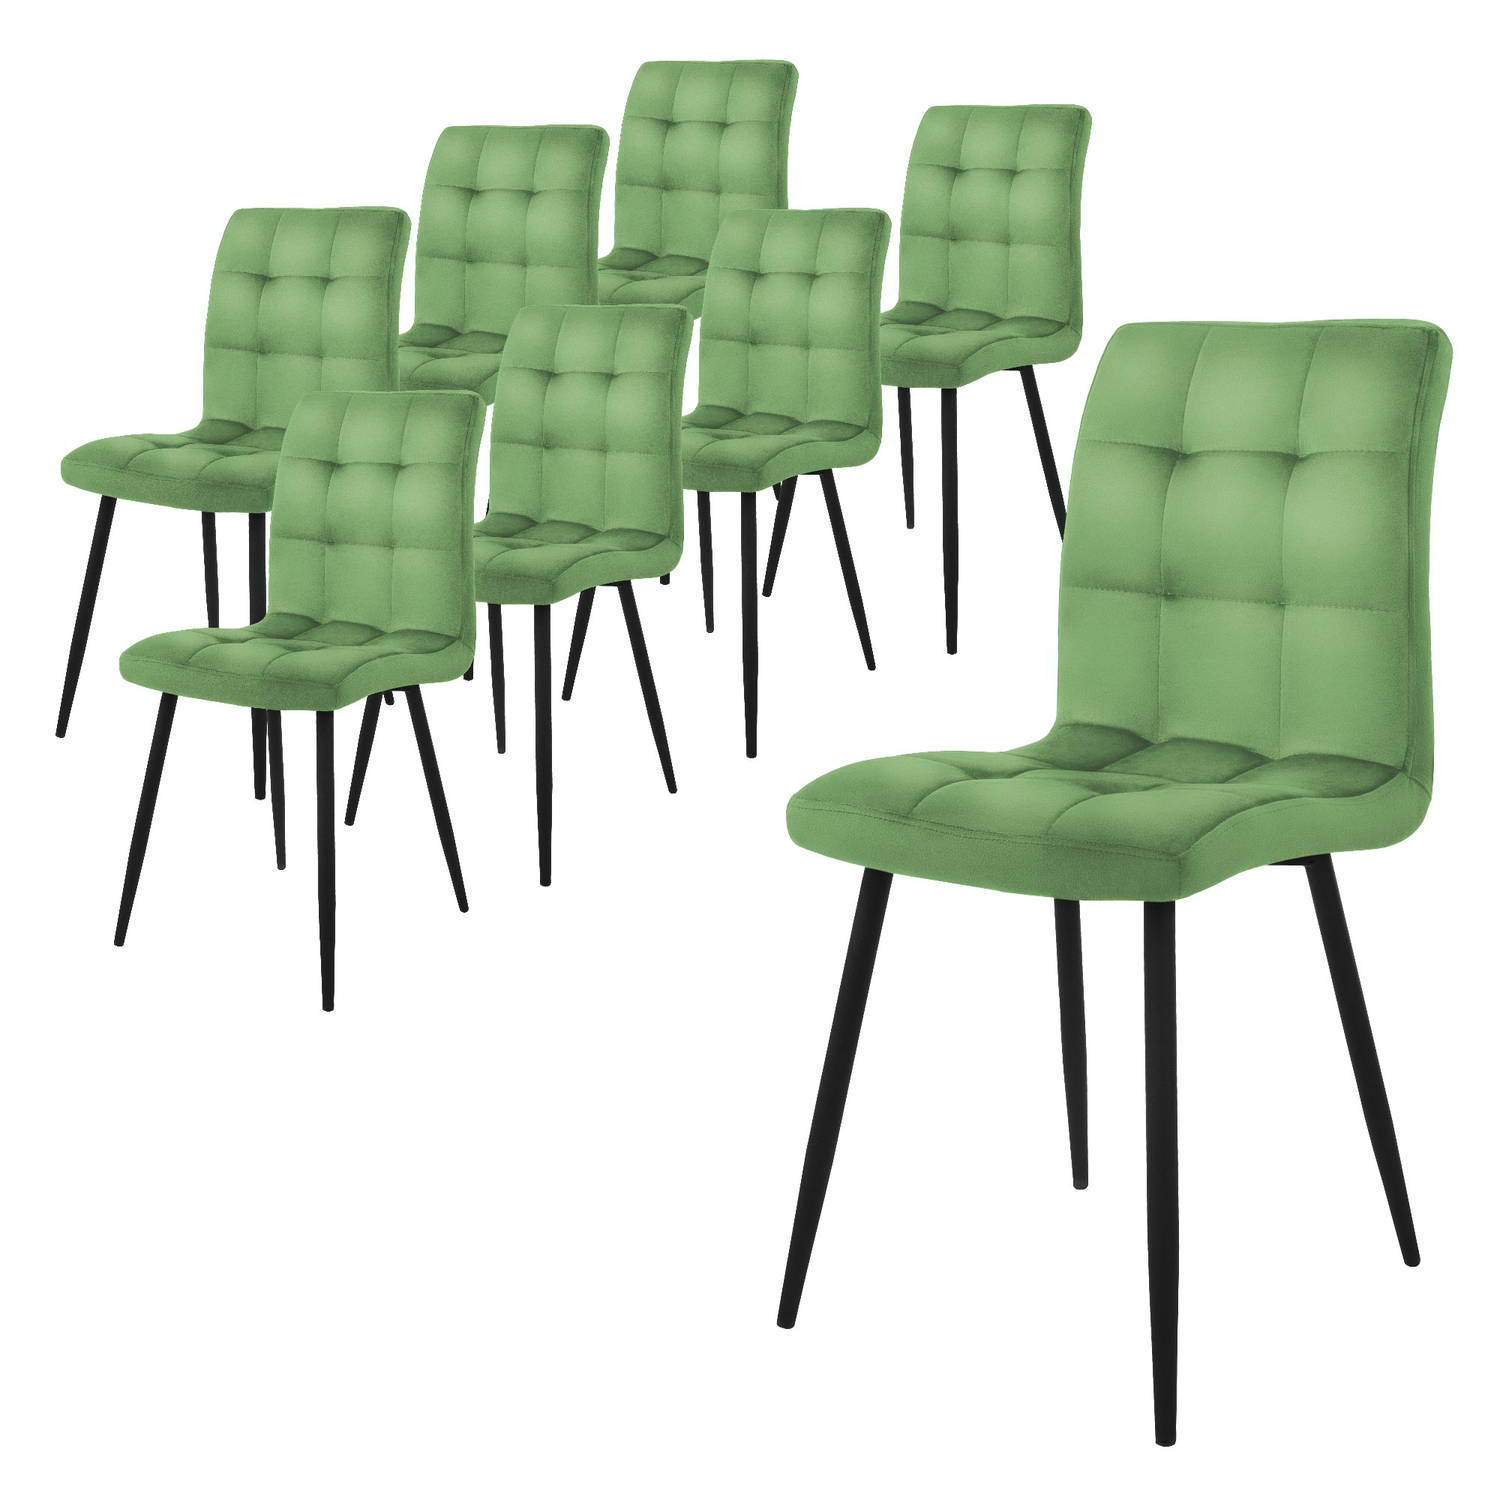 ML-Design eetkamerstoelen set van 8, salie, keukenstoel met fluwelen bekleding, woonkamerstoel met rugleuning, gestoffeerde stoel met metalen poten, ergonomische stoel voor eettafe